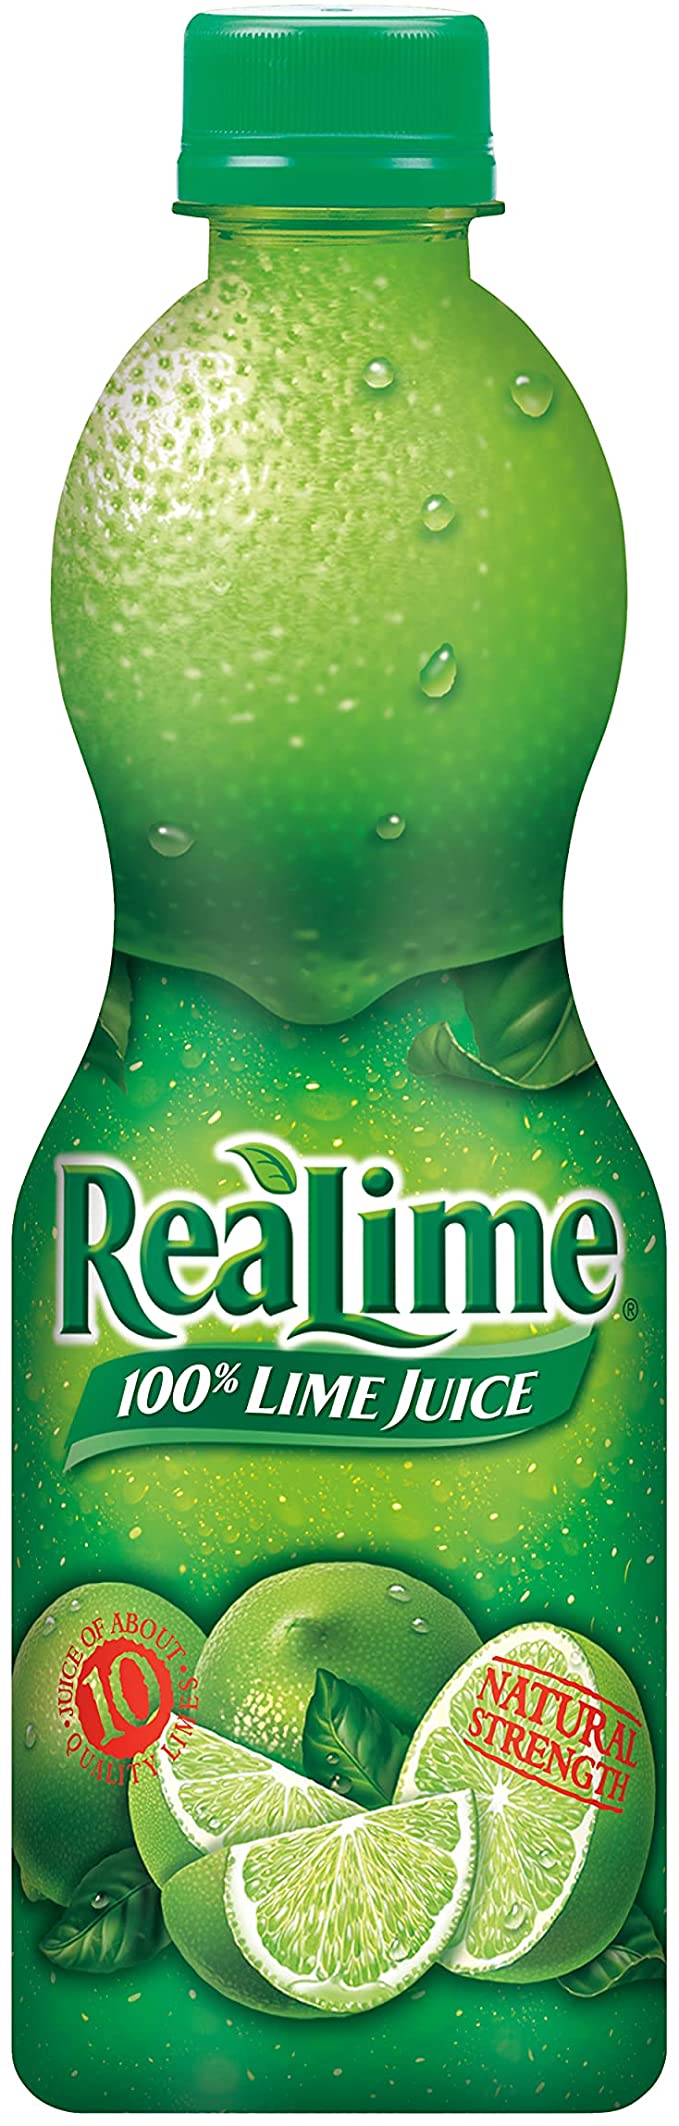 Realime - Lime Juice ea/440ml